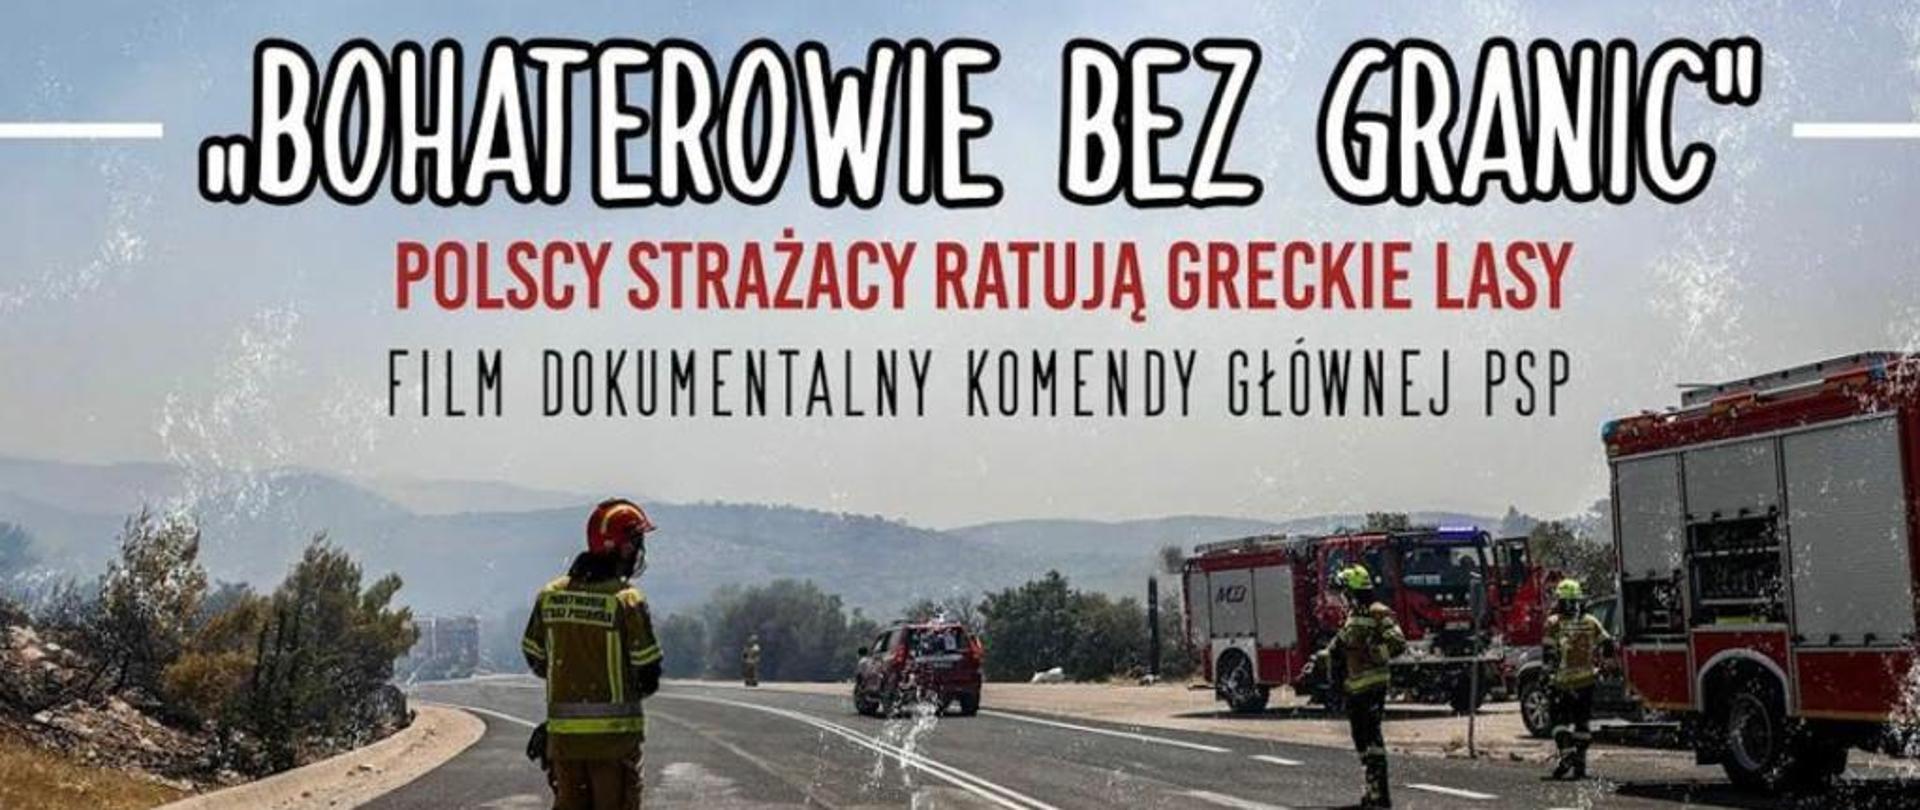 3 strażaków i 3 samochody PSP stoją na drodze, w tle teren górzysty . Napis „BOHATEROWIE BEZ GRANIC. POLSCY STRAŻACY RATUJĄ GRECKIE LASY”,